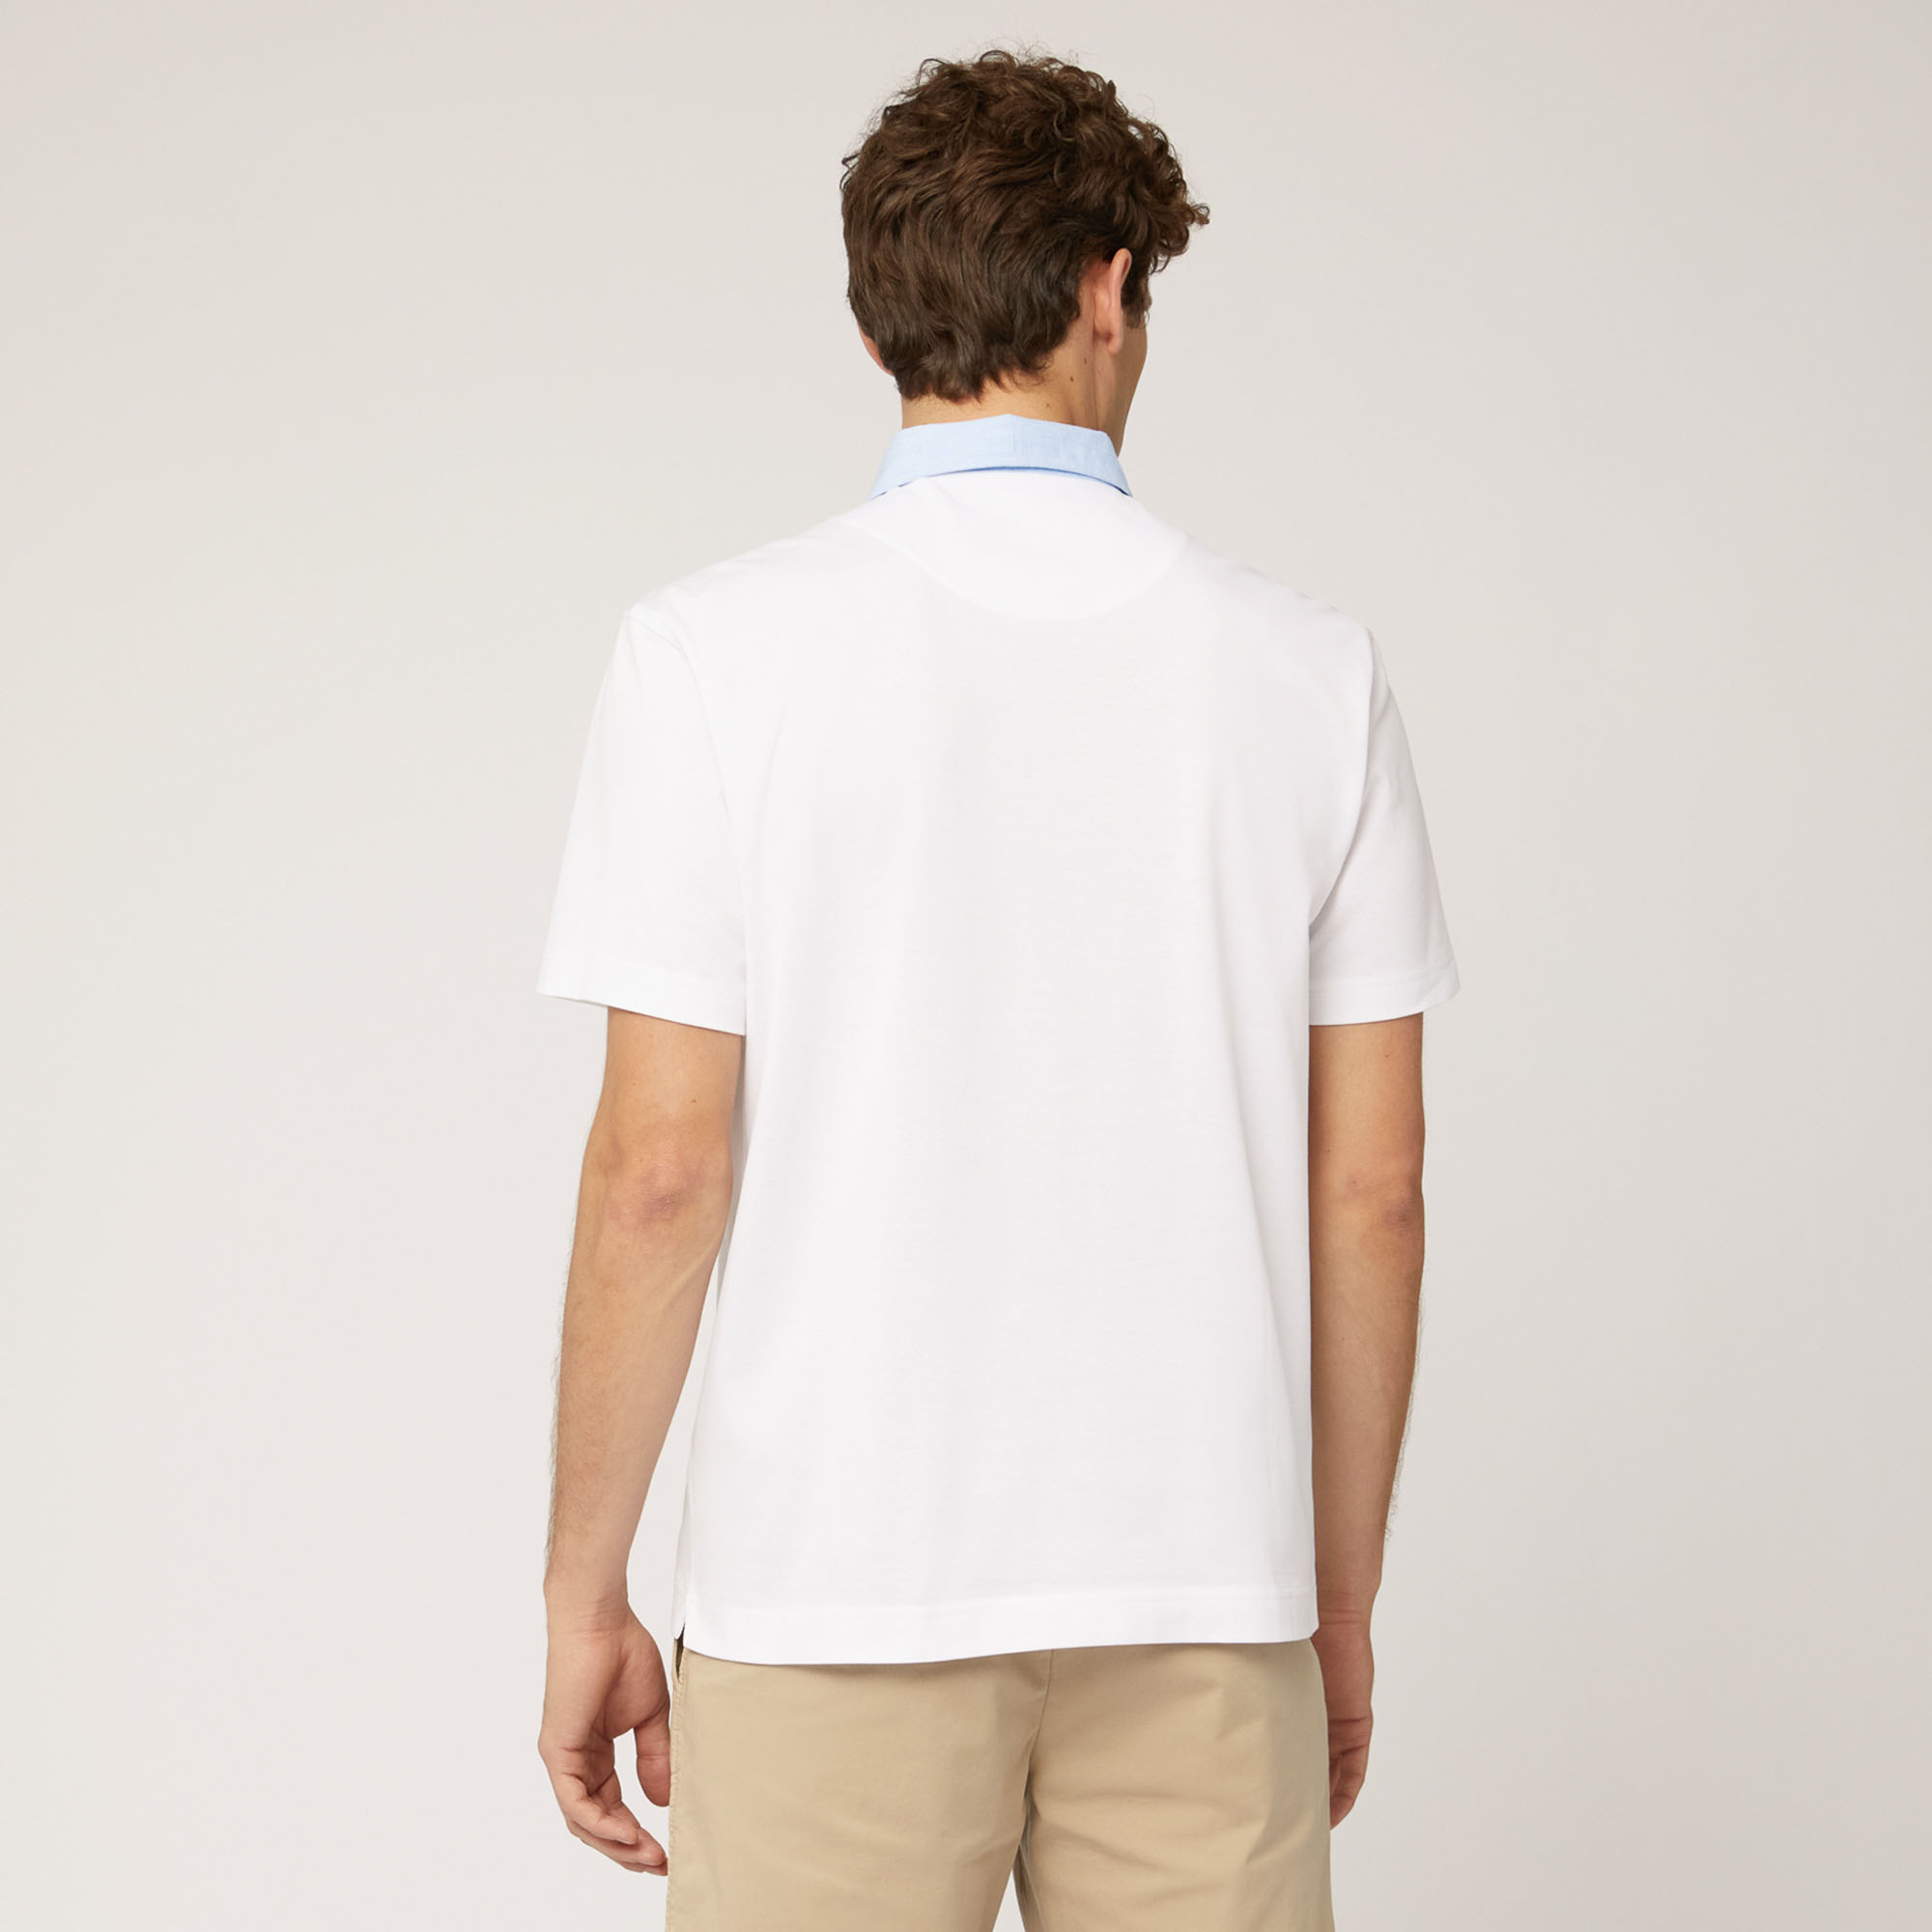 Poloshirt mit Brusttasche, Weiß, large image number 1